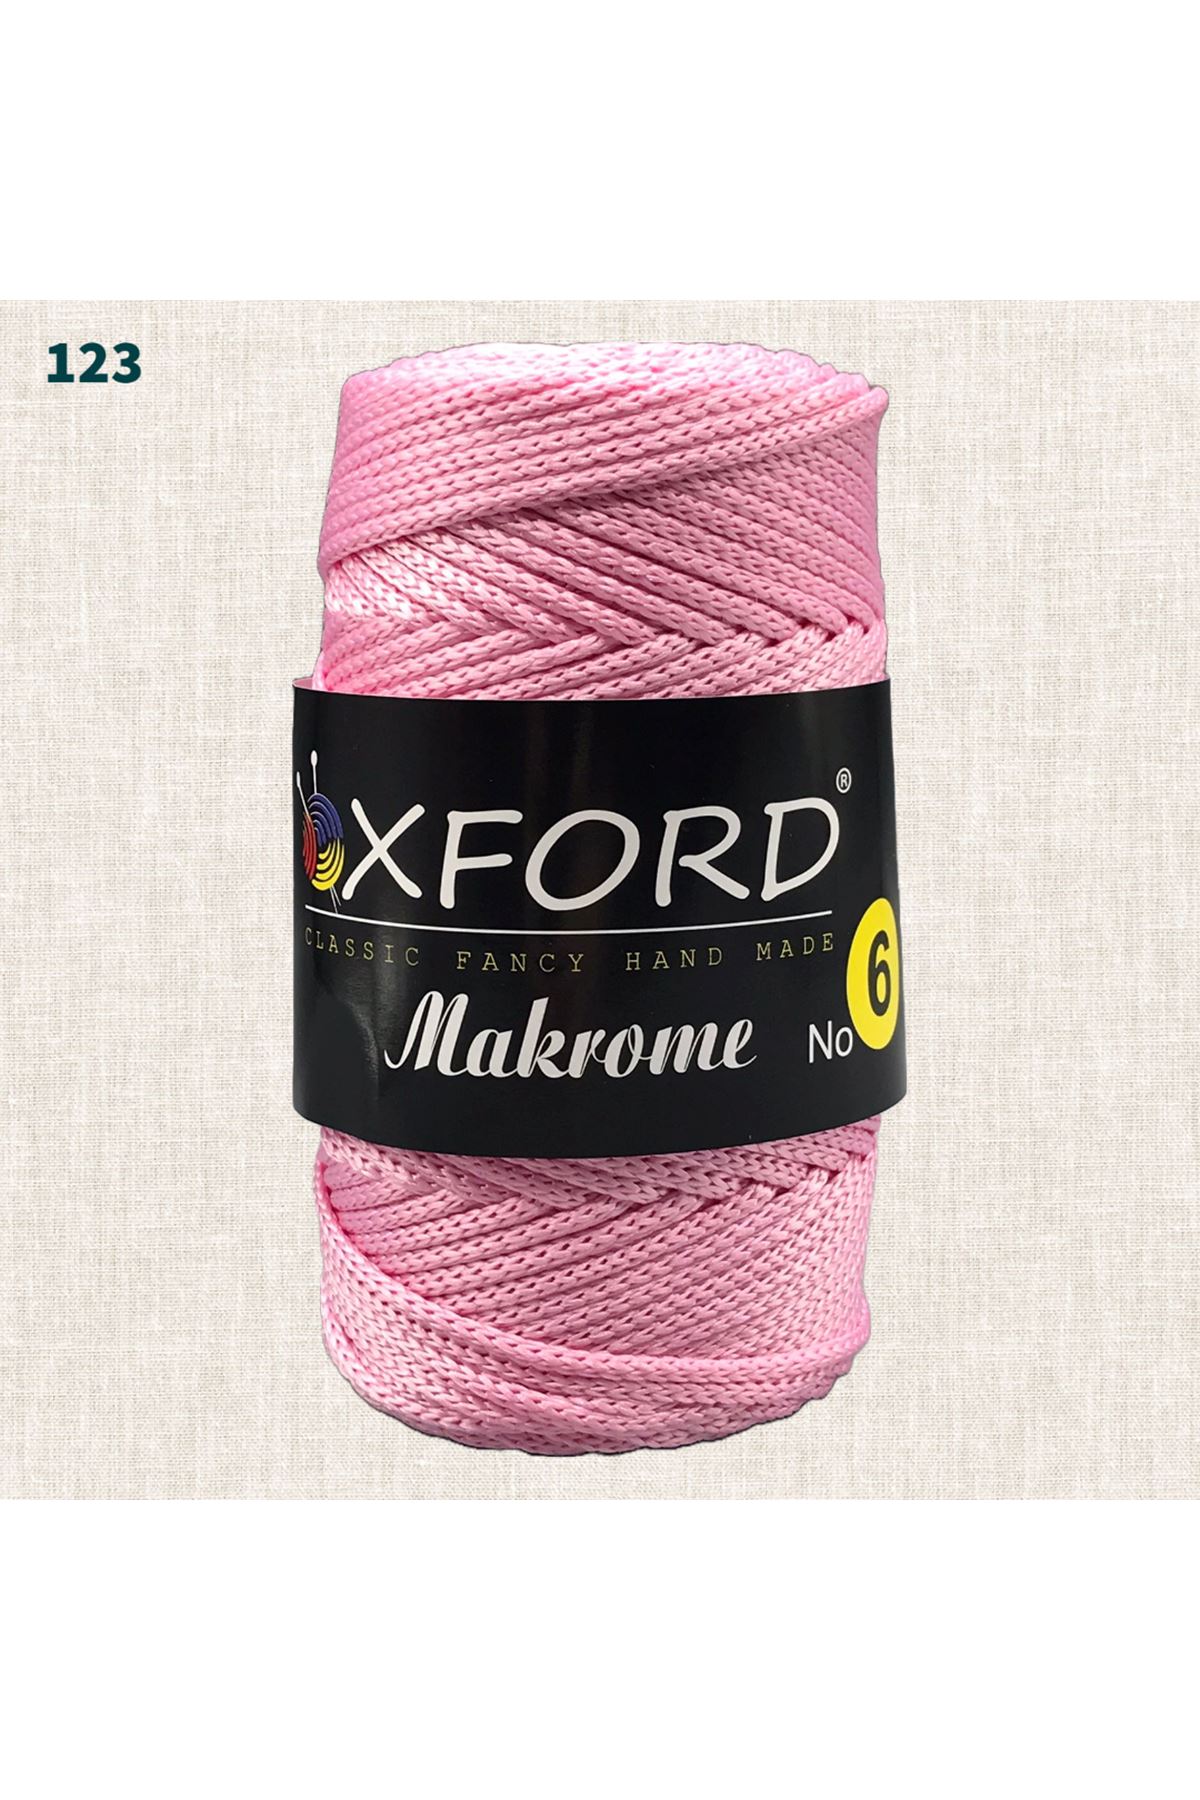 Oxford 6 No Makrome - 123 Pembe